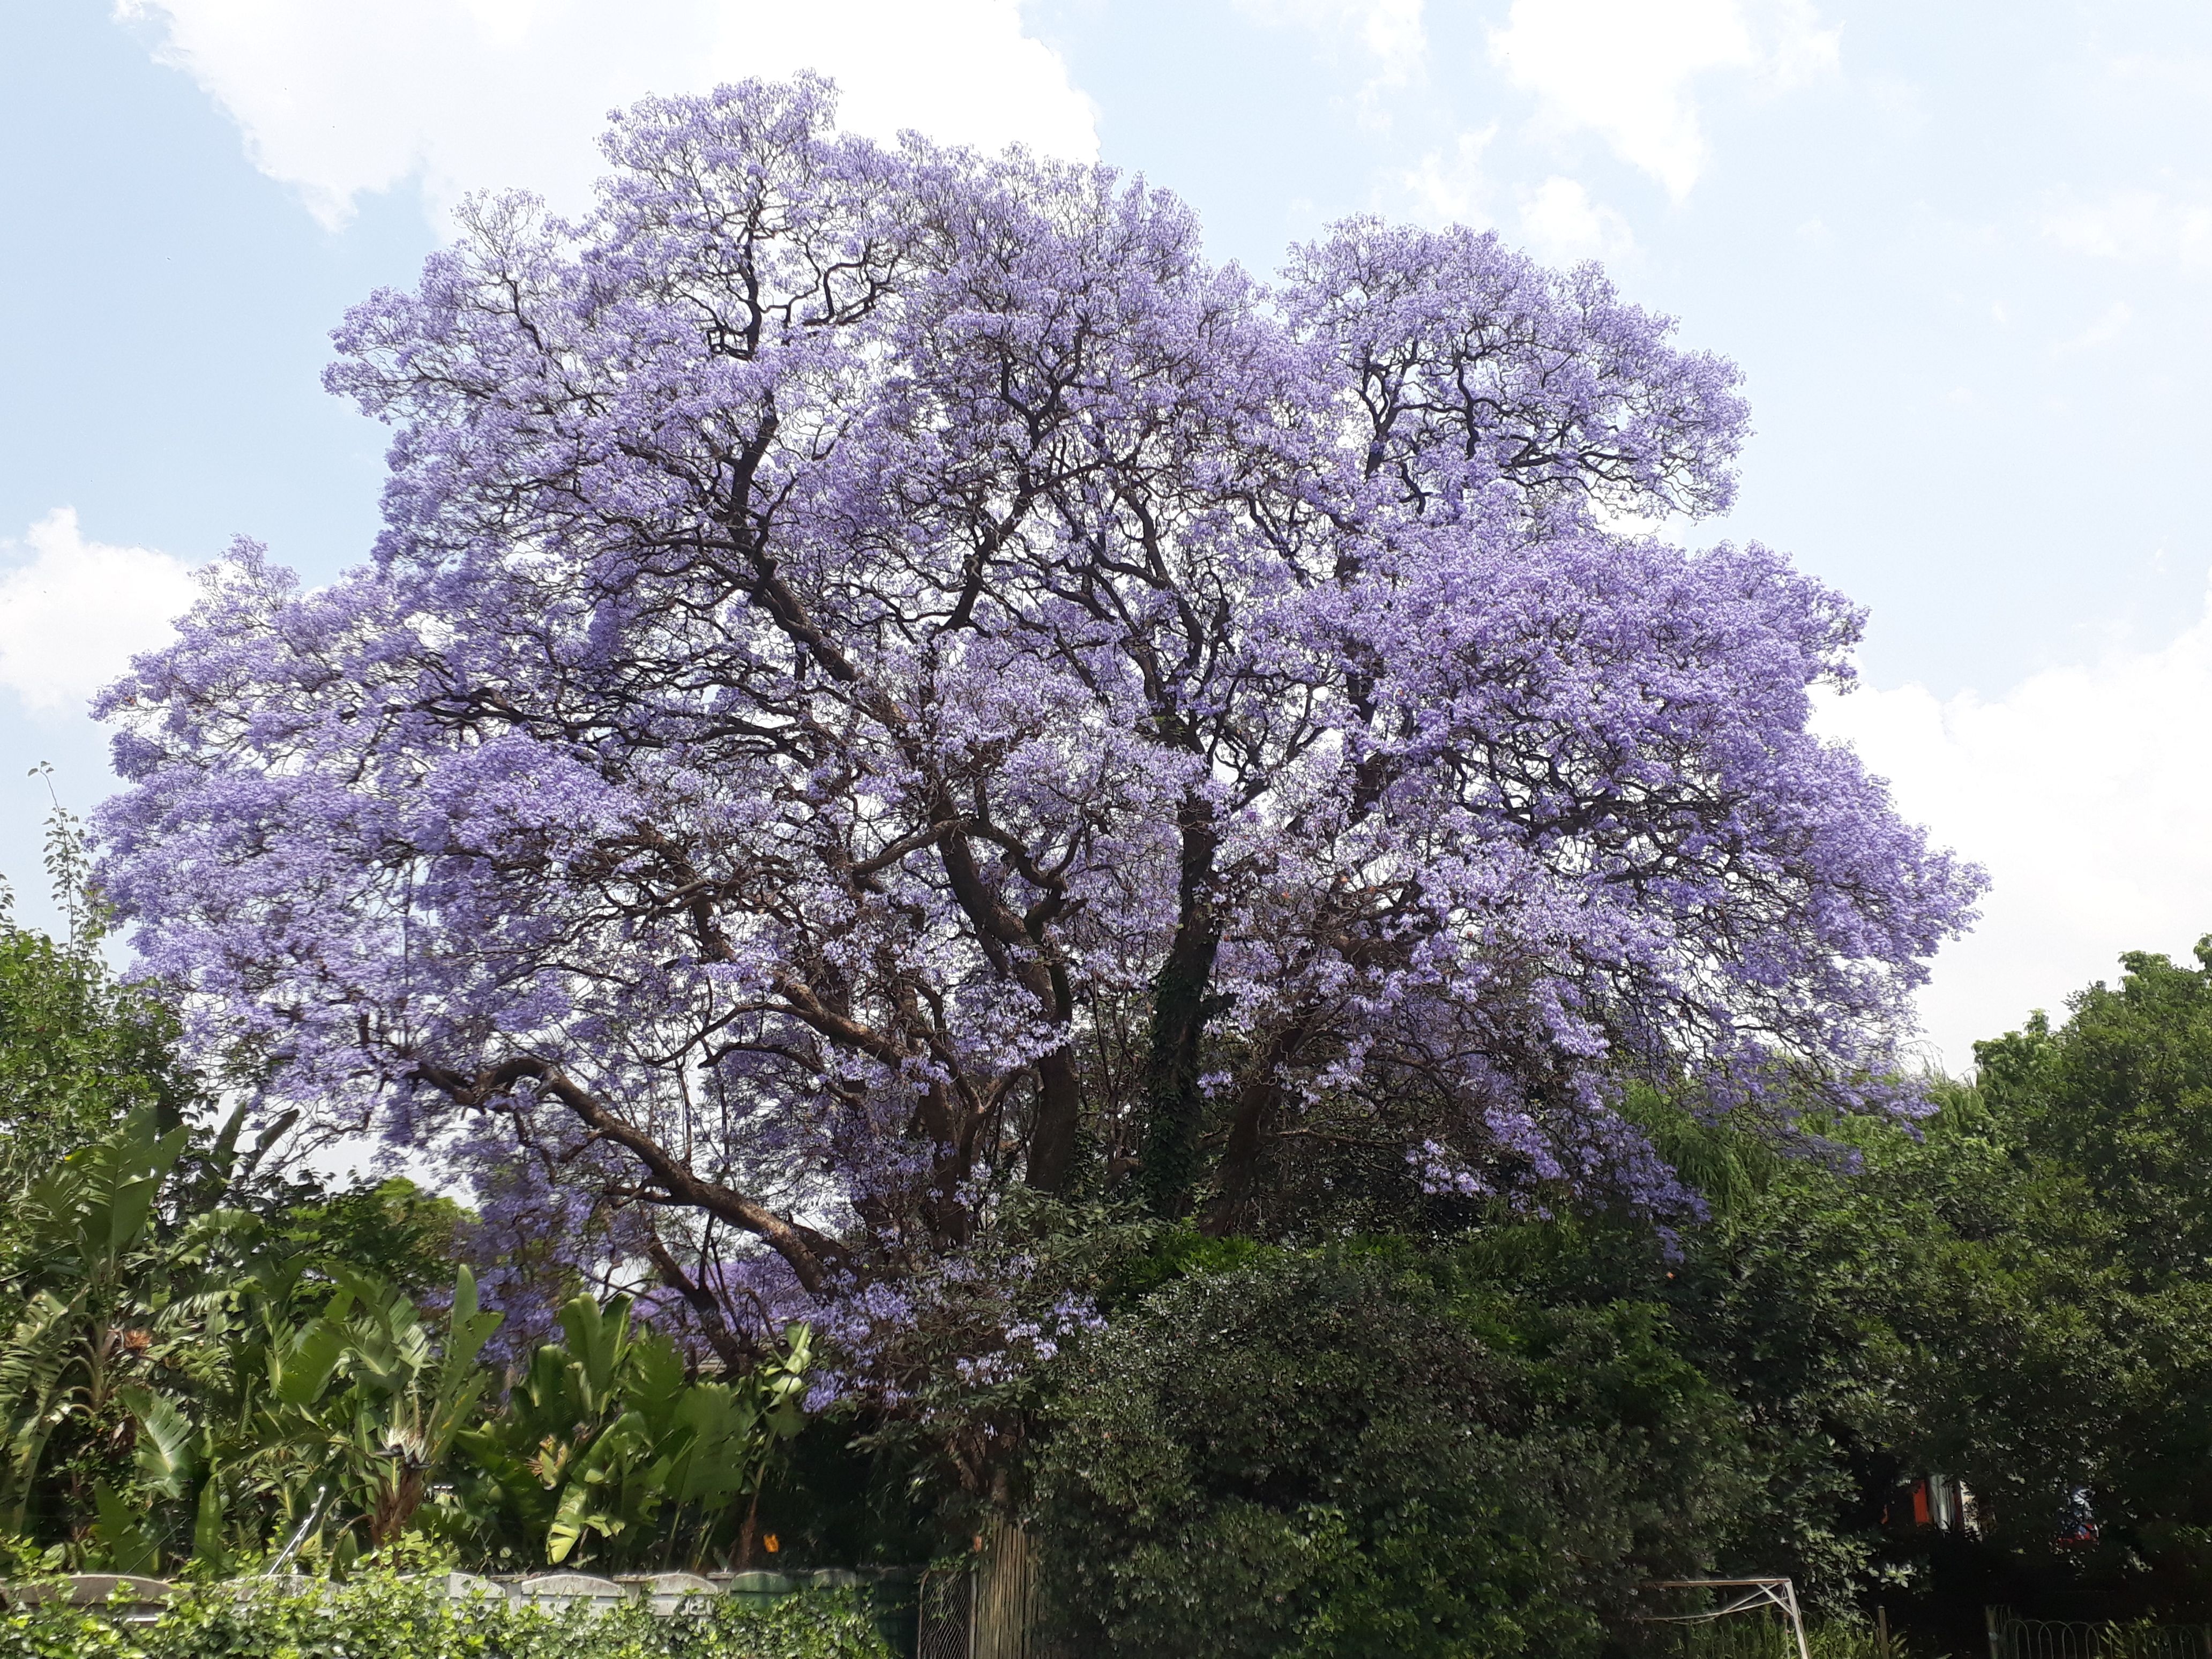 jacaranda in bloom